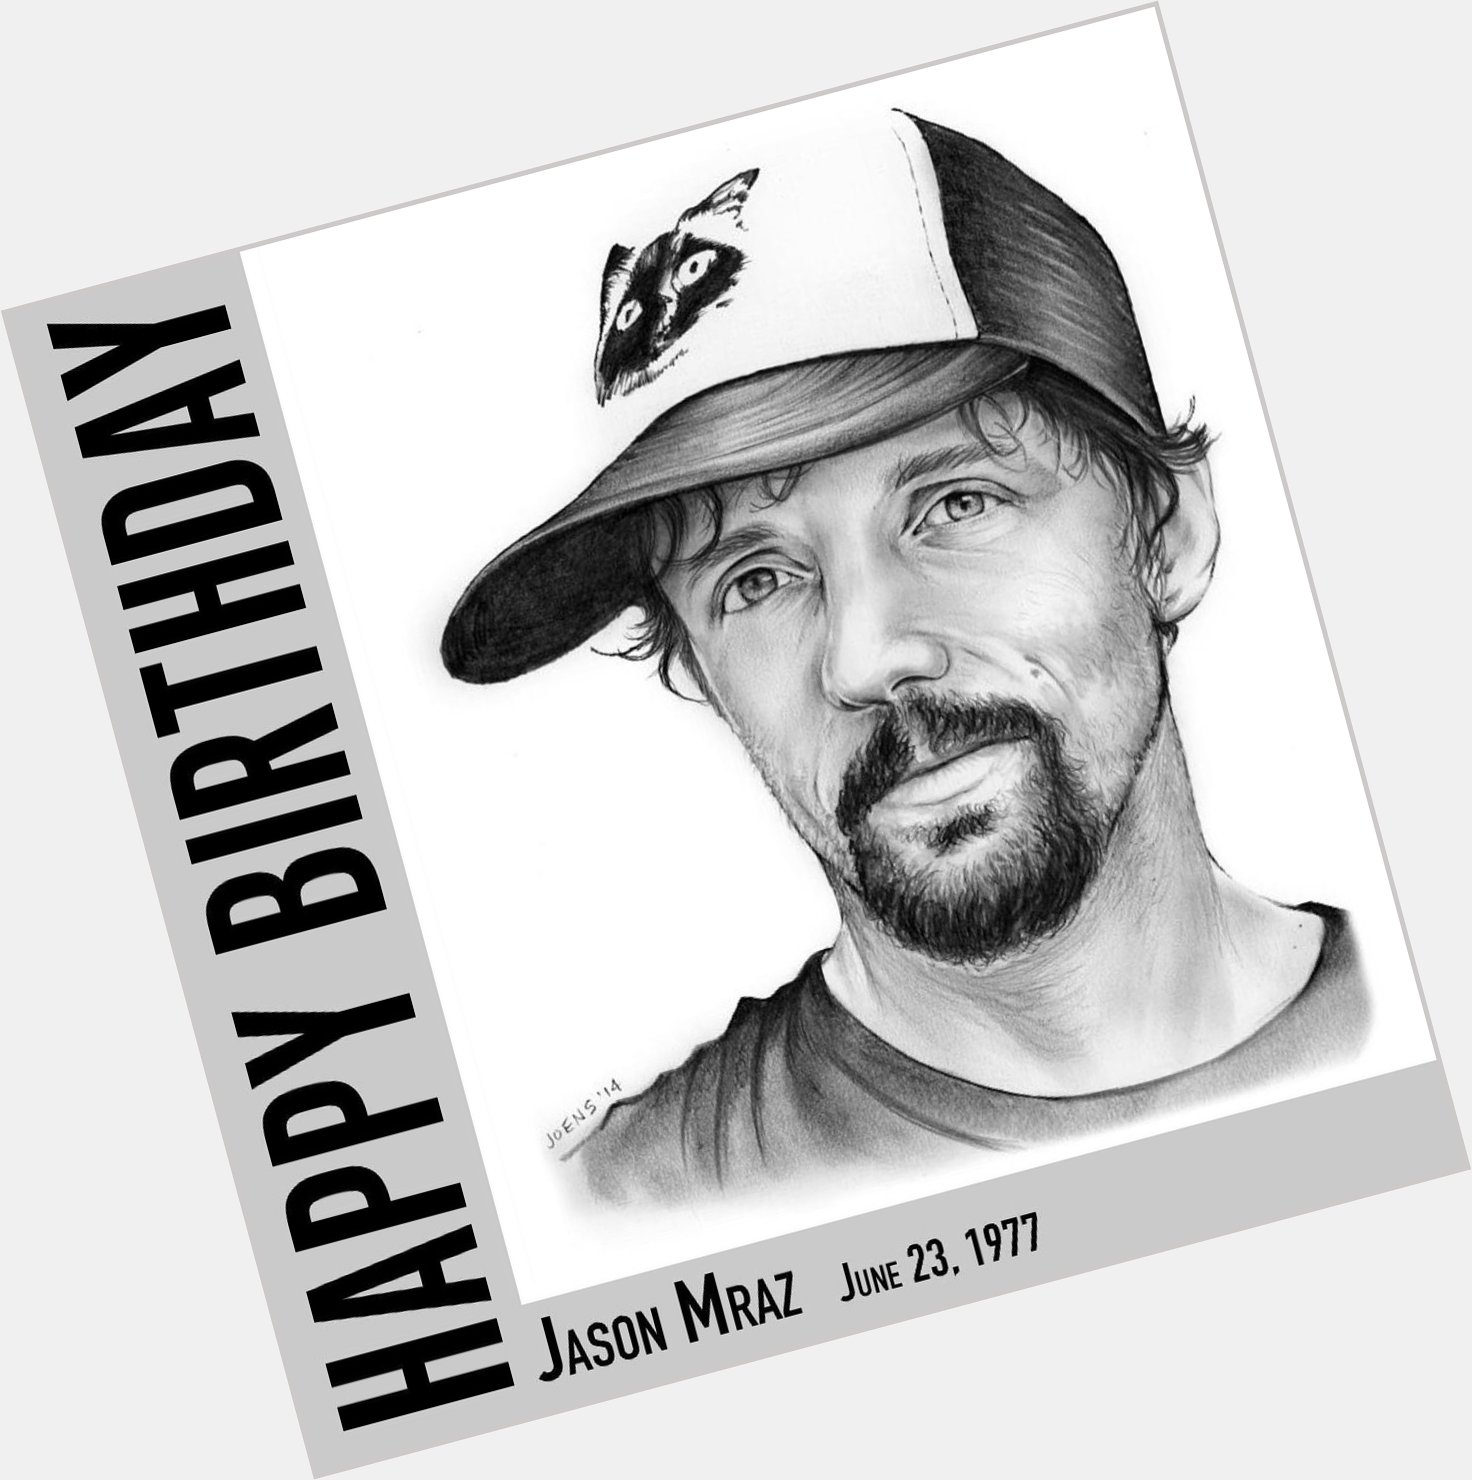 Happy Birthday, Jason Mraz
June 23, 1977 